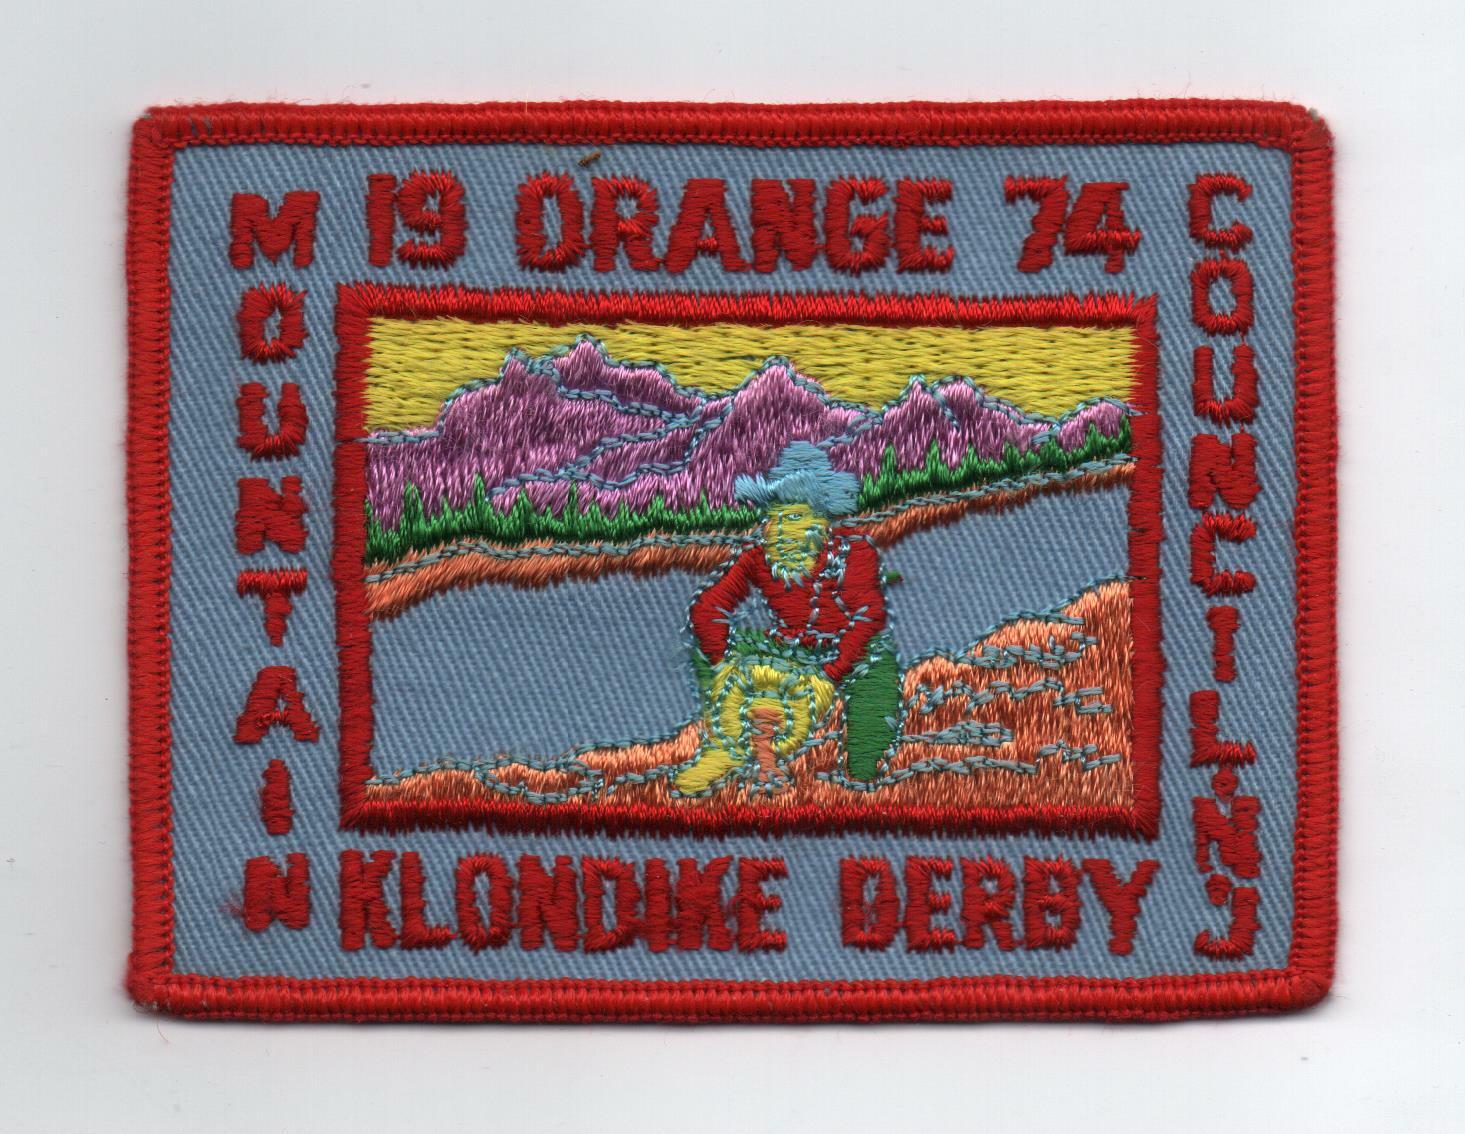 1974 Klondike Derby (Orange Mt. Council, New Jersey) Patch, Mint